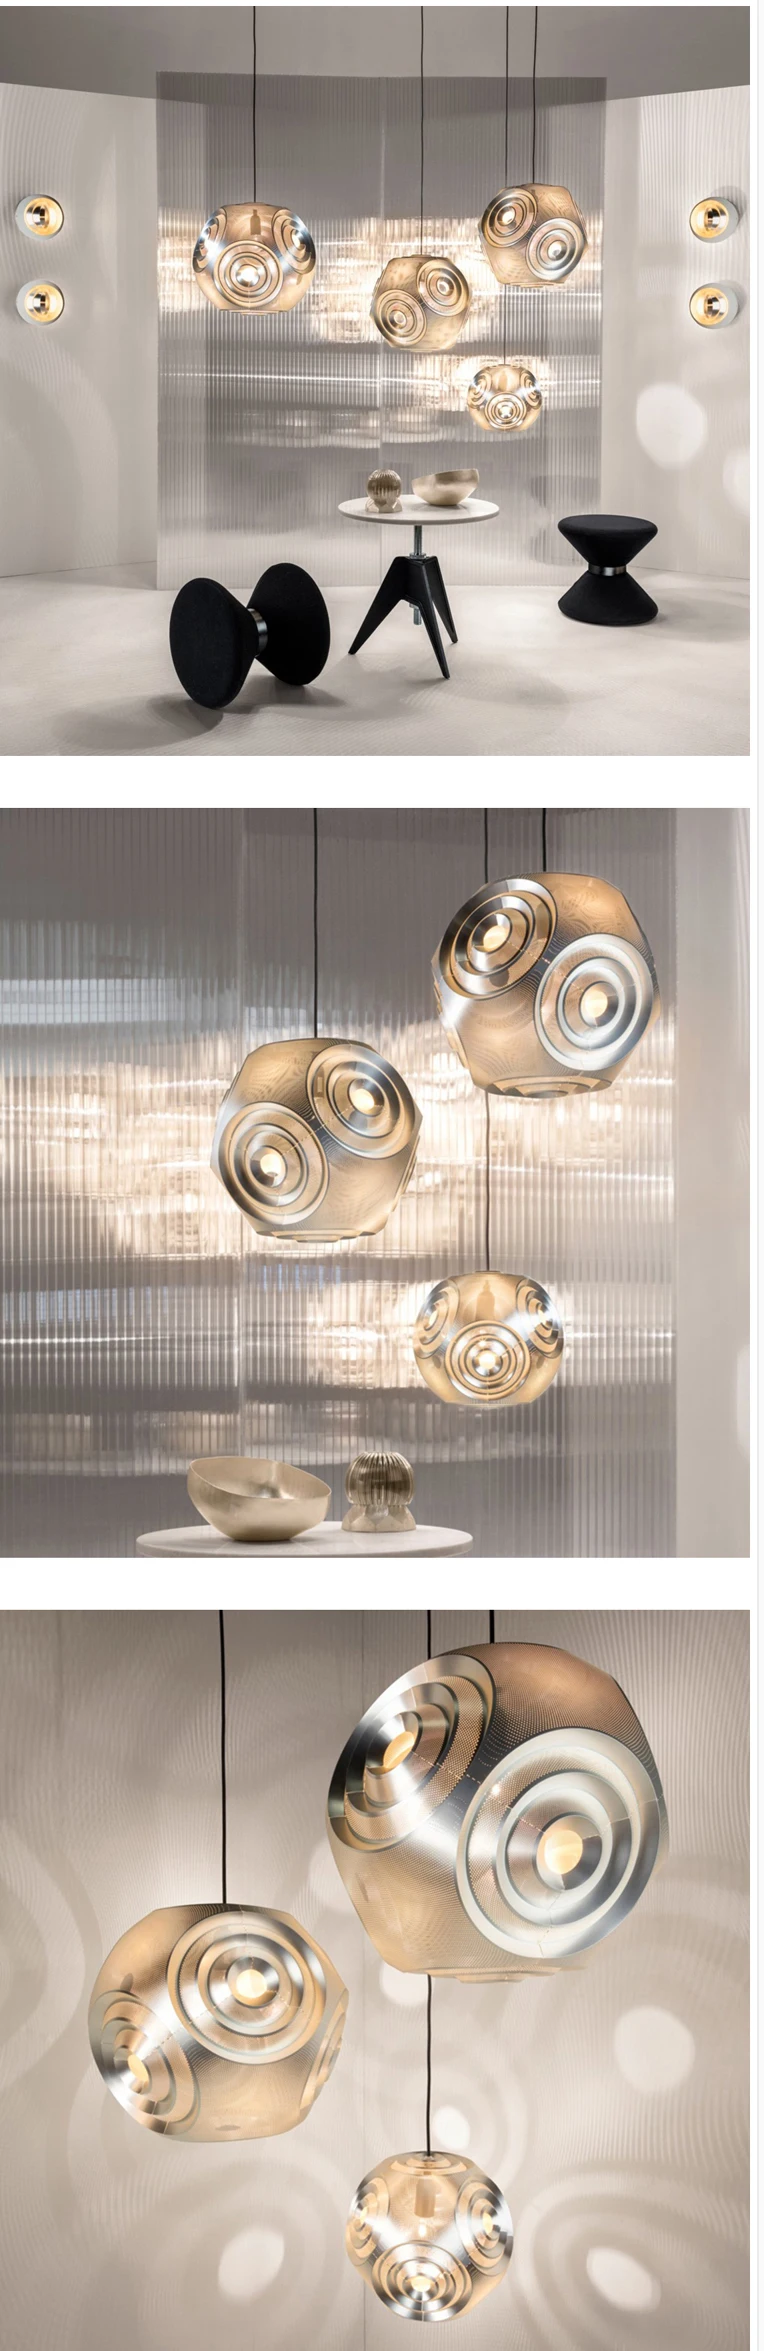 Итальянский дизайн из нержавеющей стали шар droplight Нерегулярные геометрические тени кулон освещение космический шар подвесные лампы